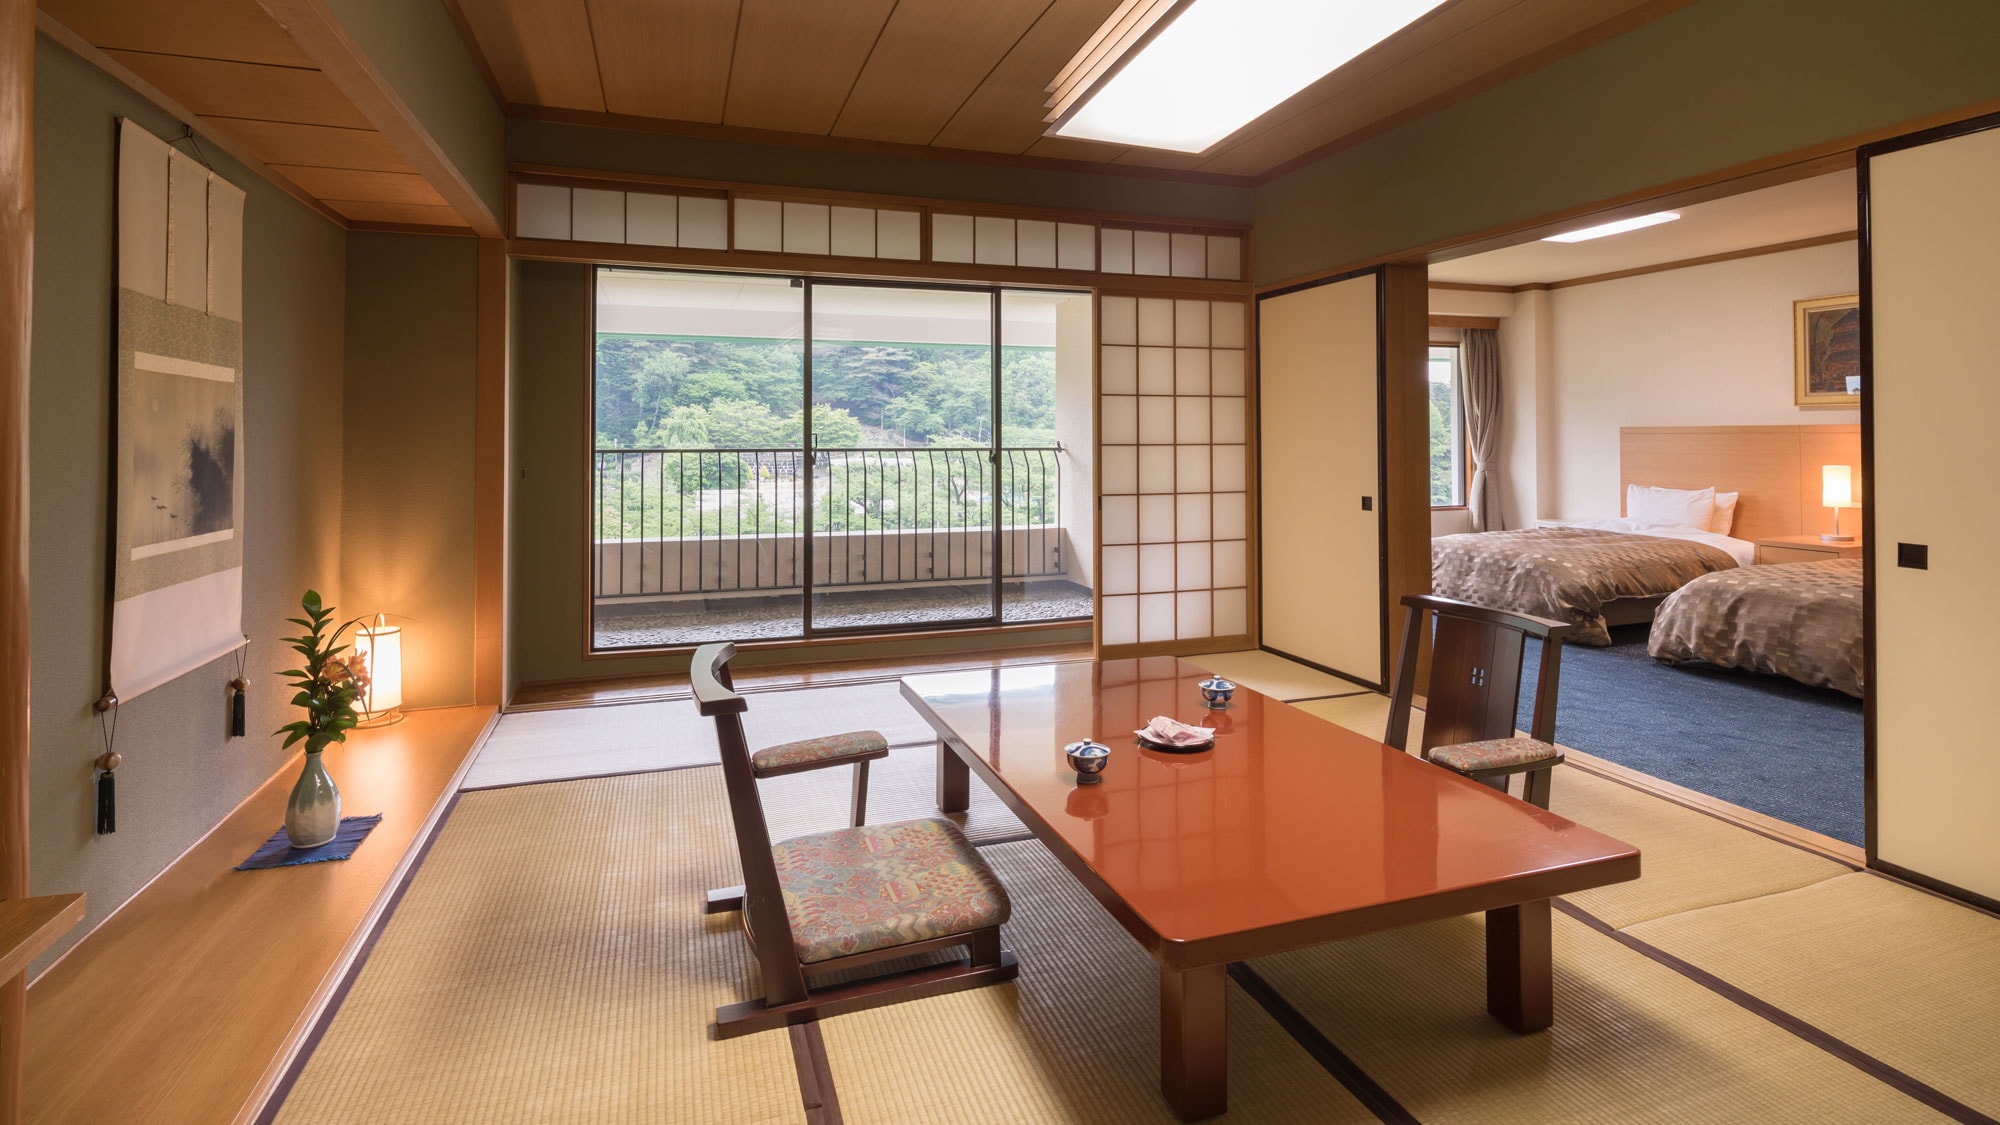 【일본식 방】 일본식 객실 12 다다미 + 트윈룸